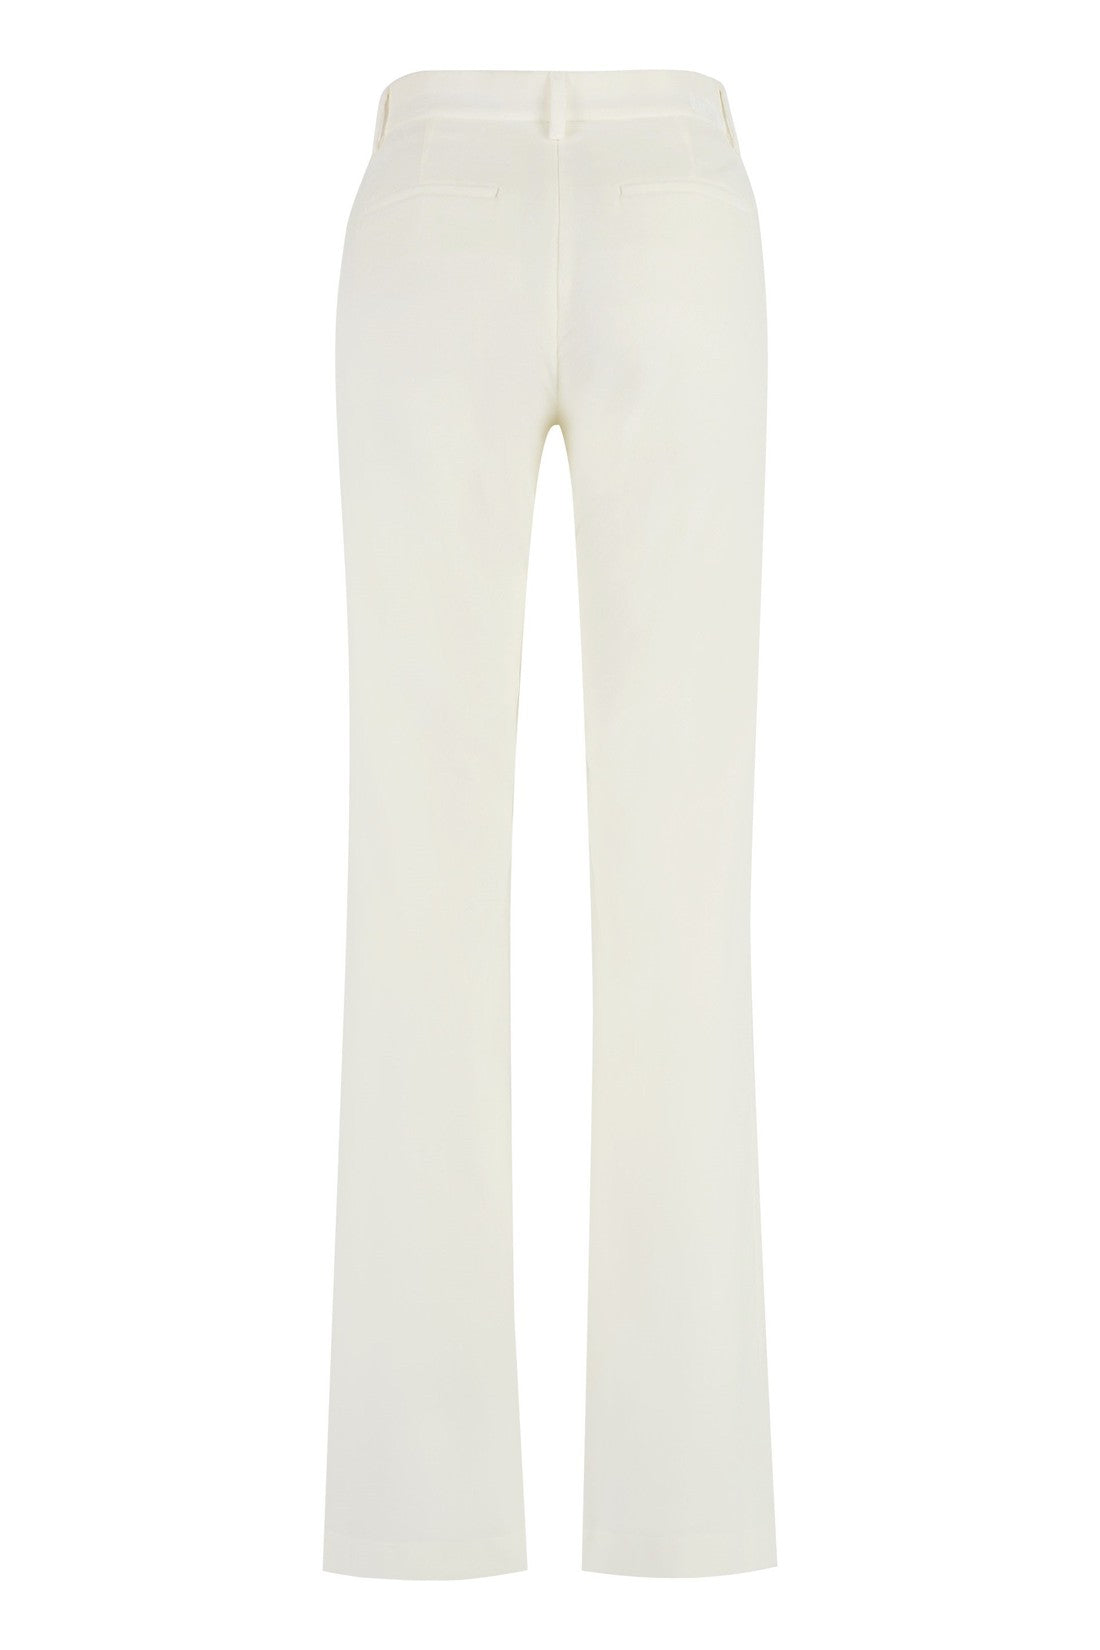 MSGM-OUTLET-SALE-Velvet trousers-ARCHIVIST